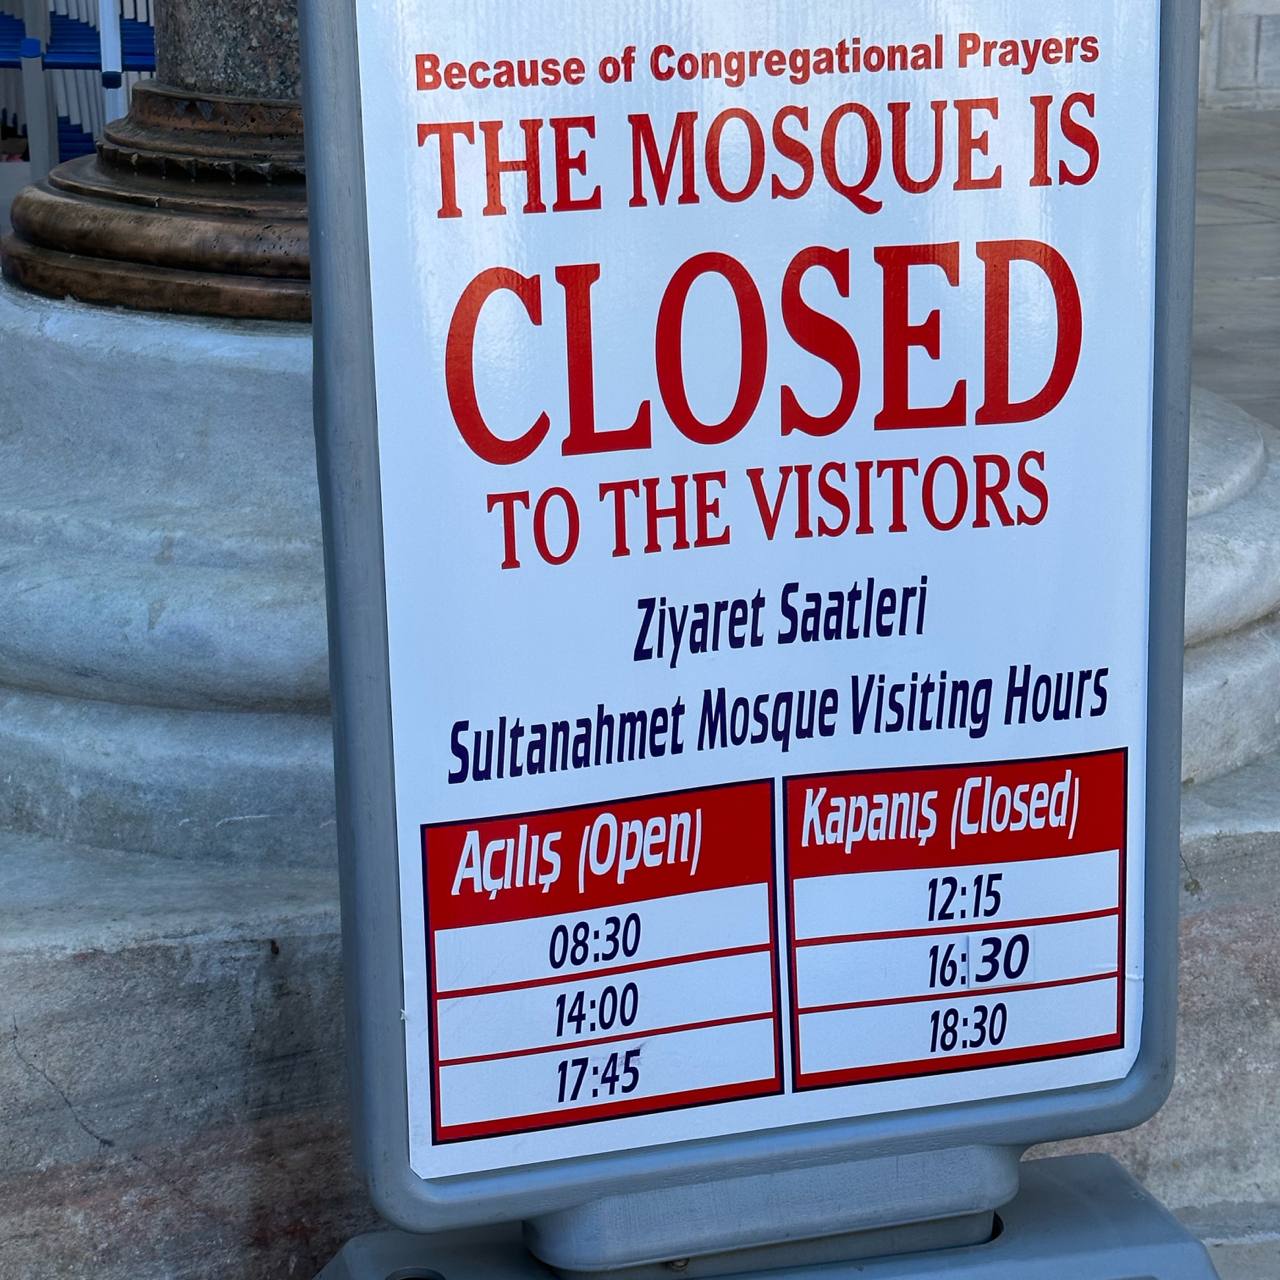 Vestimenta y horario para mezquitas